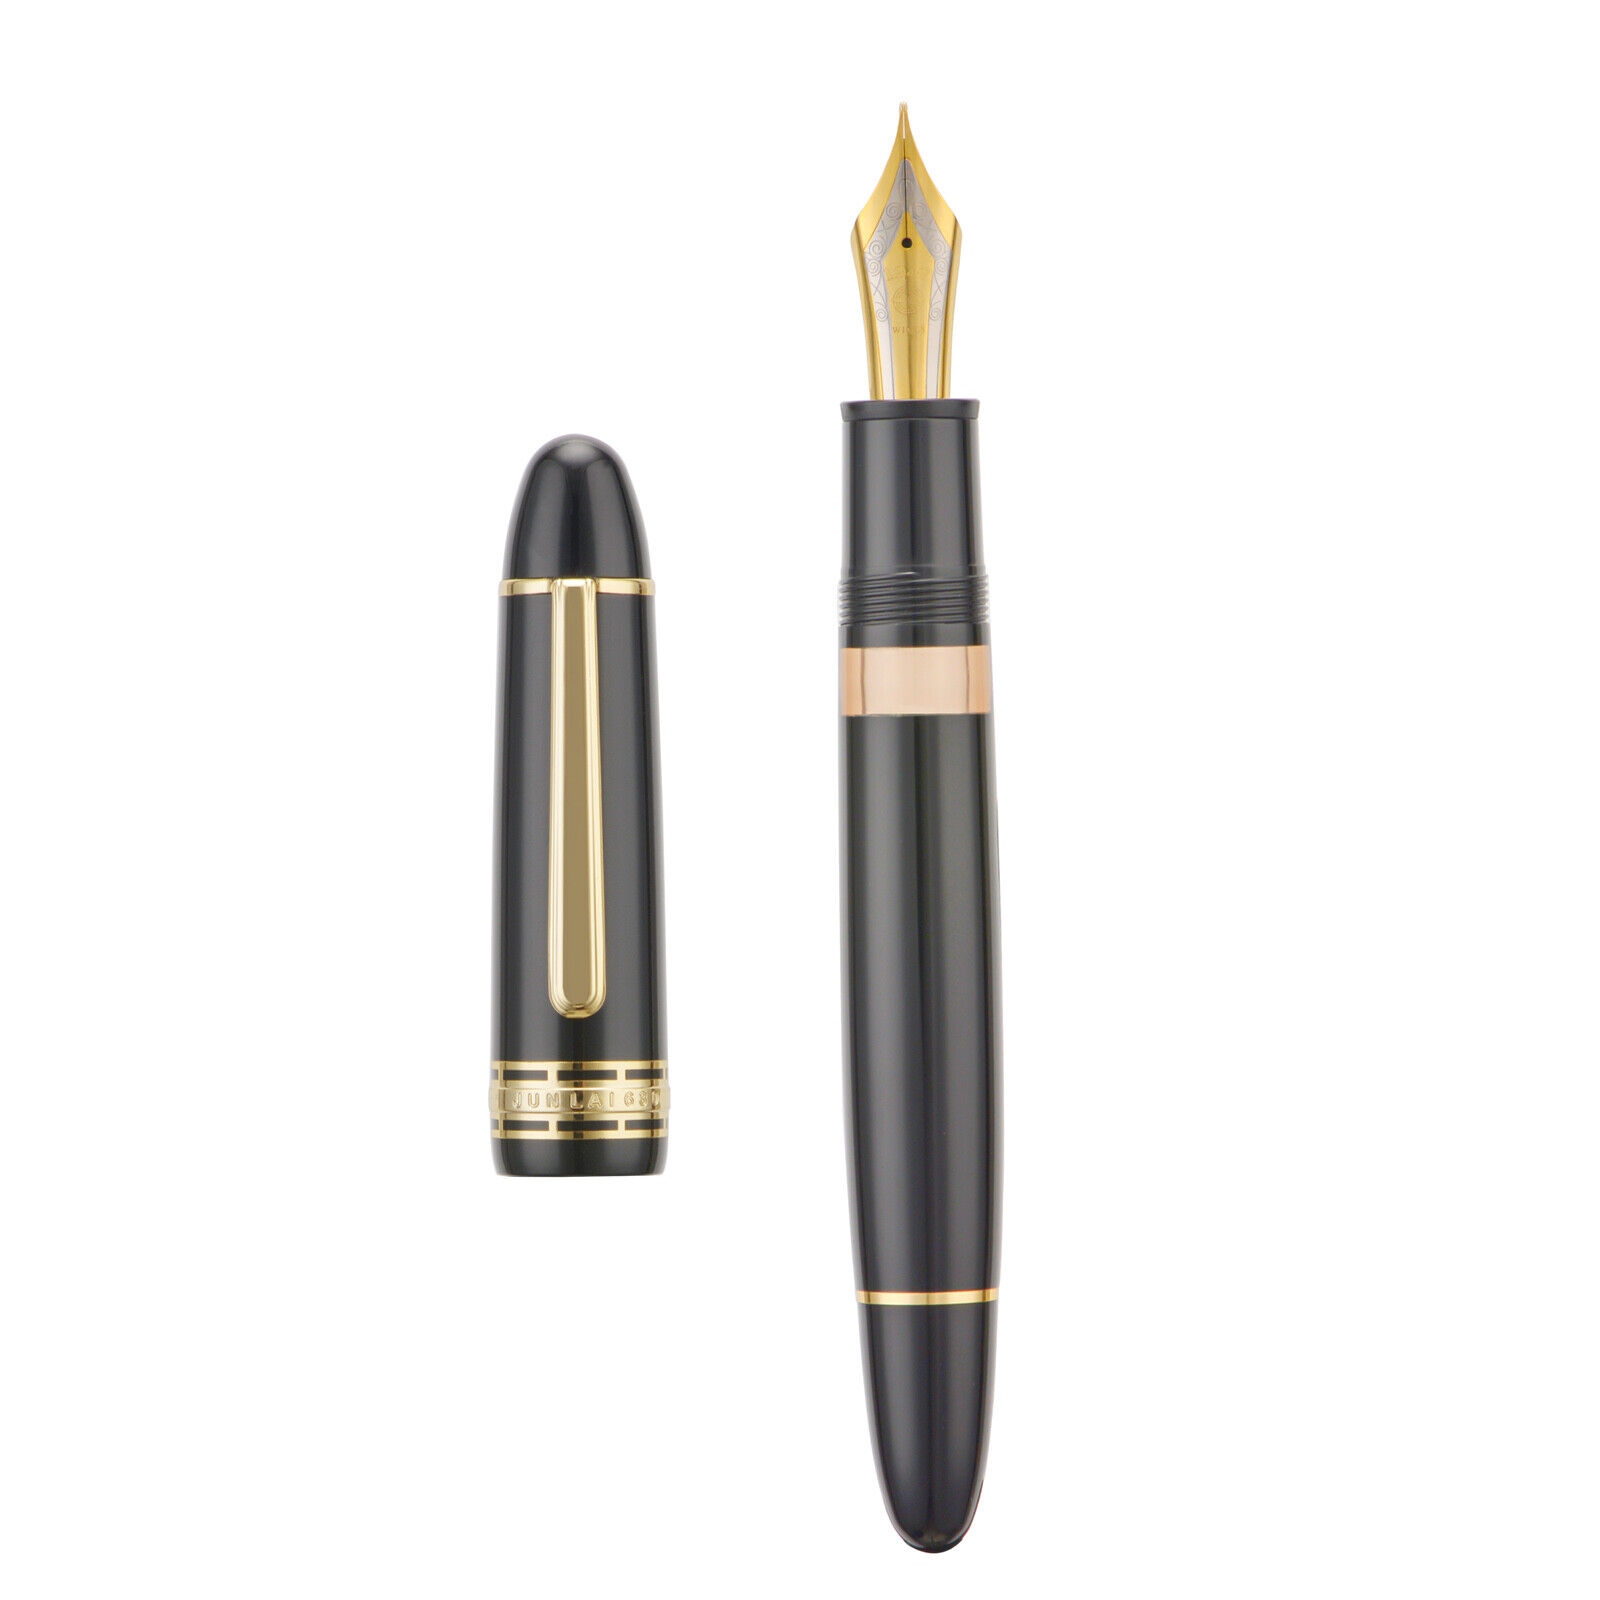 New Wingsung 630 Piston Fountain Pen, #8 Iridium Fine Nib Resin Writing Pen